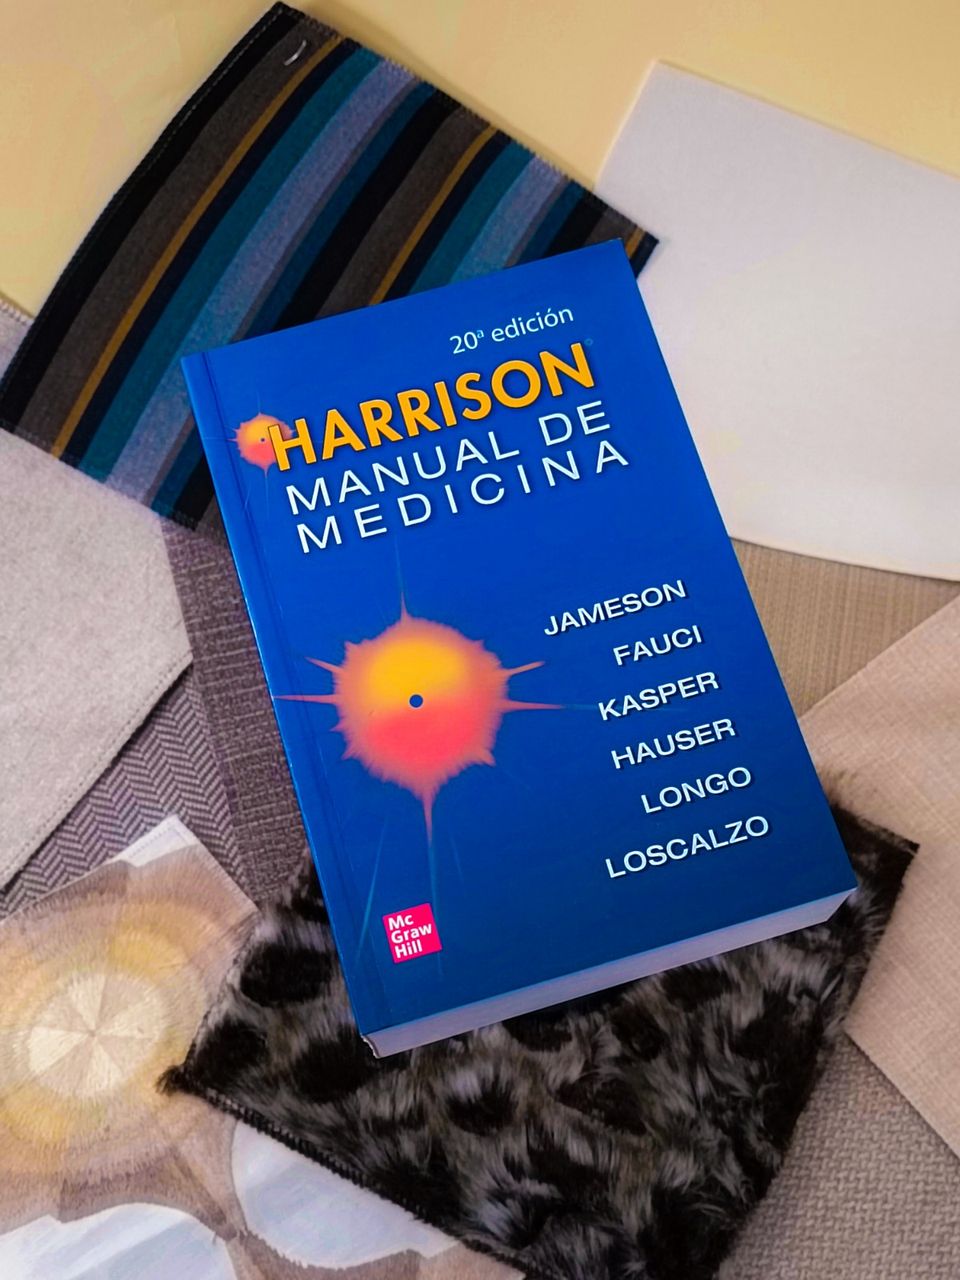 Harrison. Manual de Medicina Interna